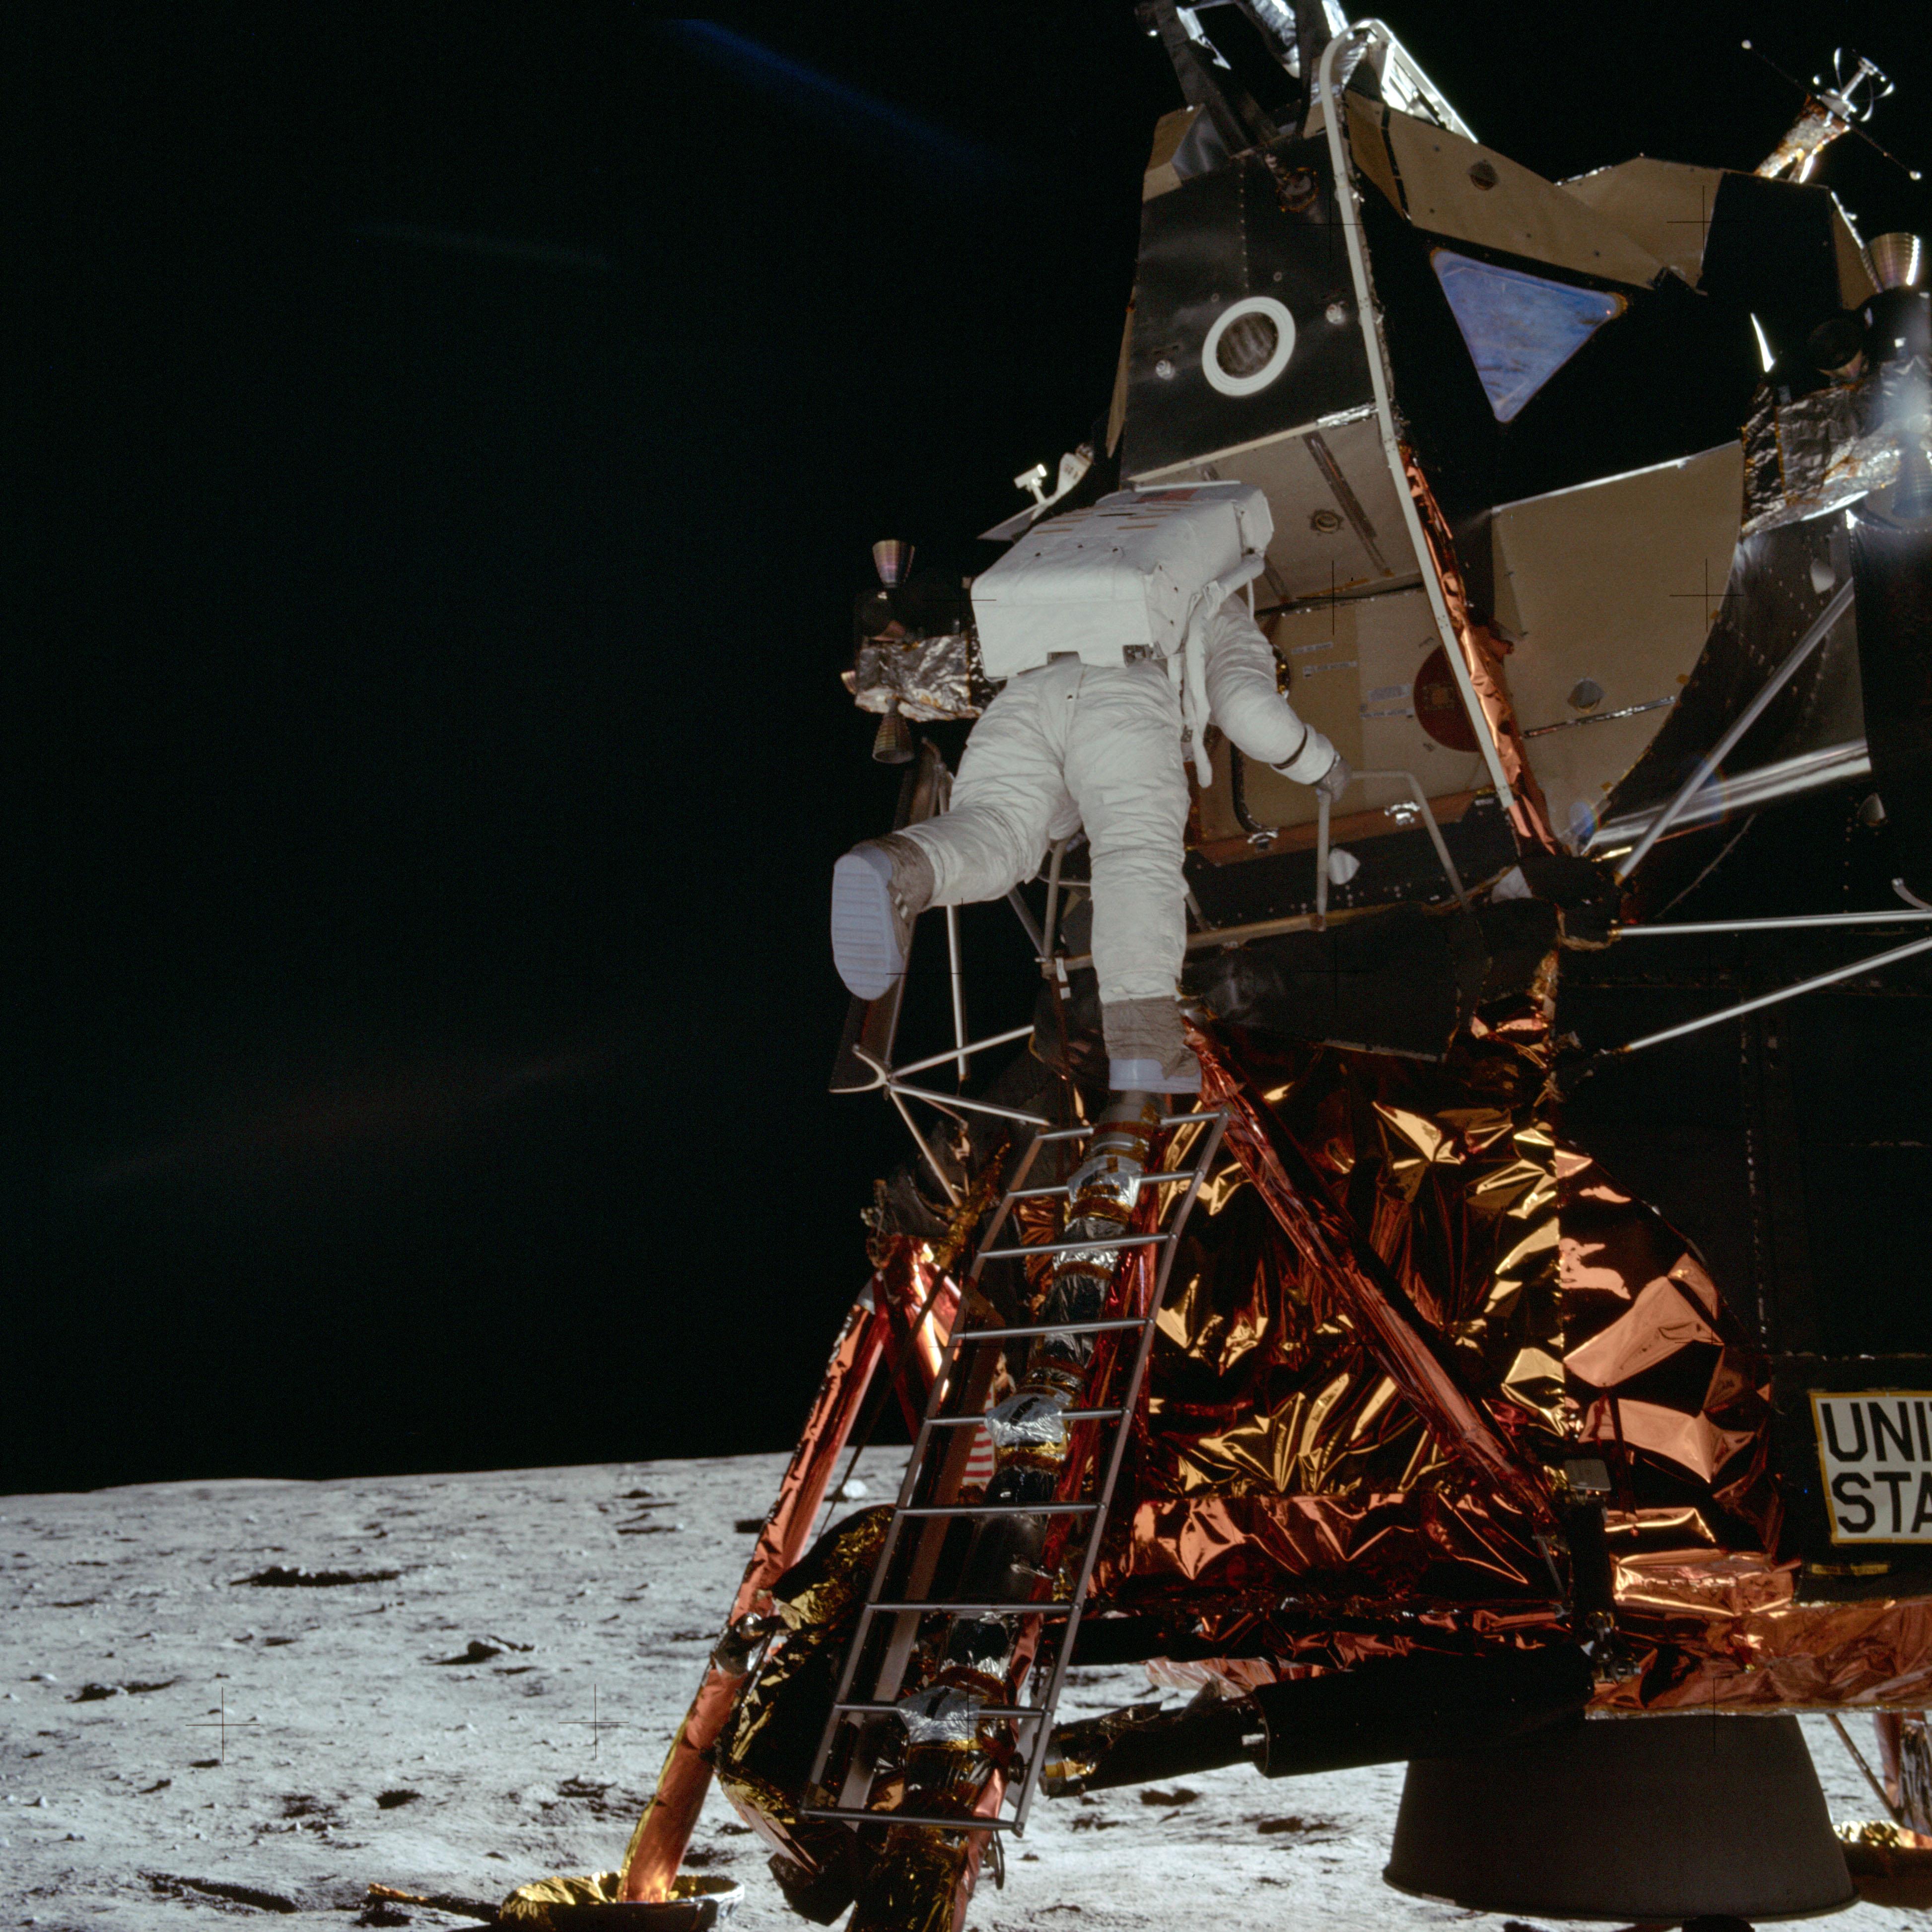 Buzz Aldrin bondit en bas de l'échelle du module lunaire "Eagle", le 20 juillet 1969. [NASA - Neil A. Armstrong]